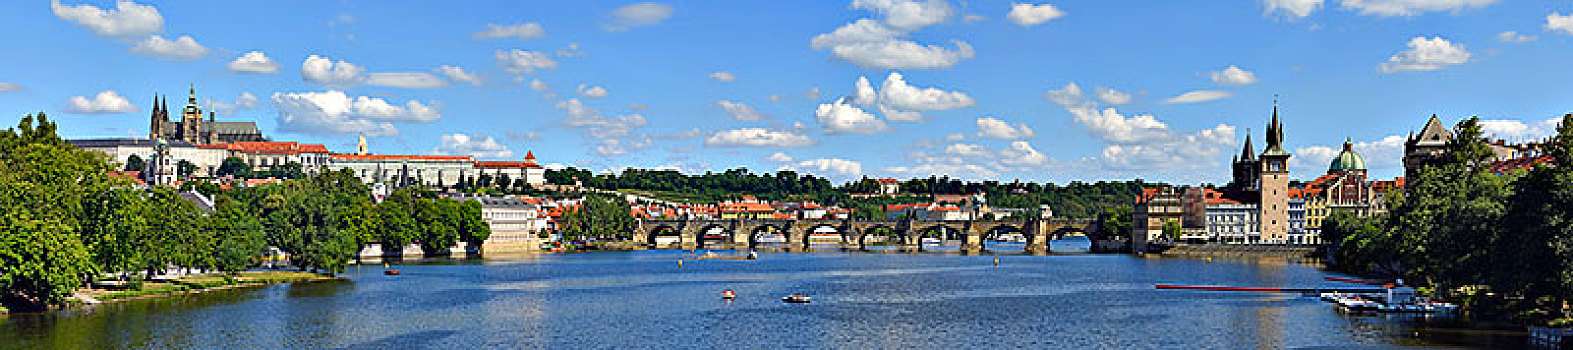 全景,布拉格城堡,查理大桥,老城,伏尔塔瓦河,布拉格,波希米亚,捷克共和国,欧洲